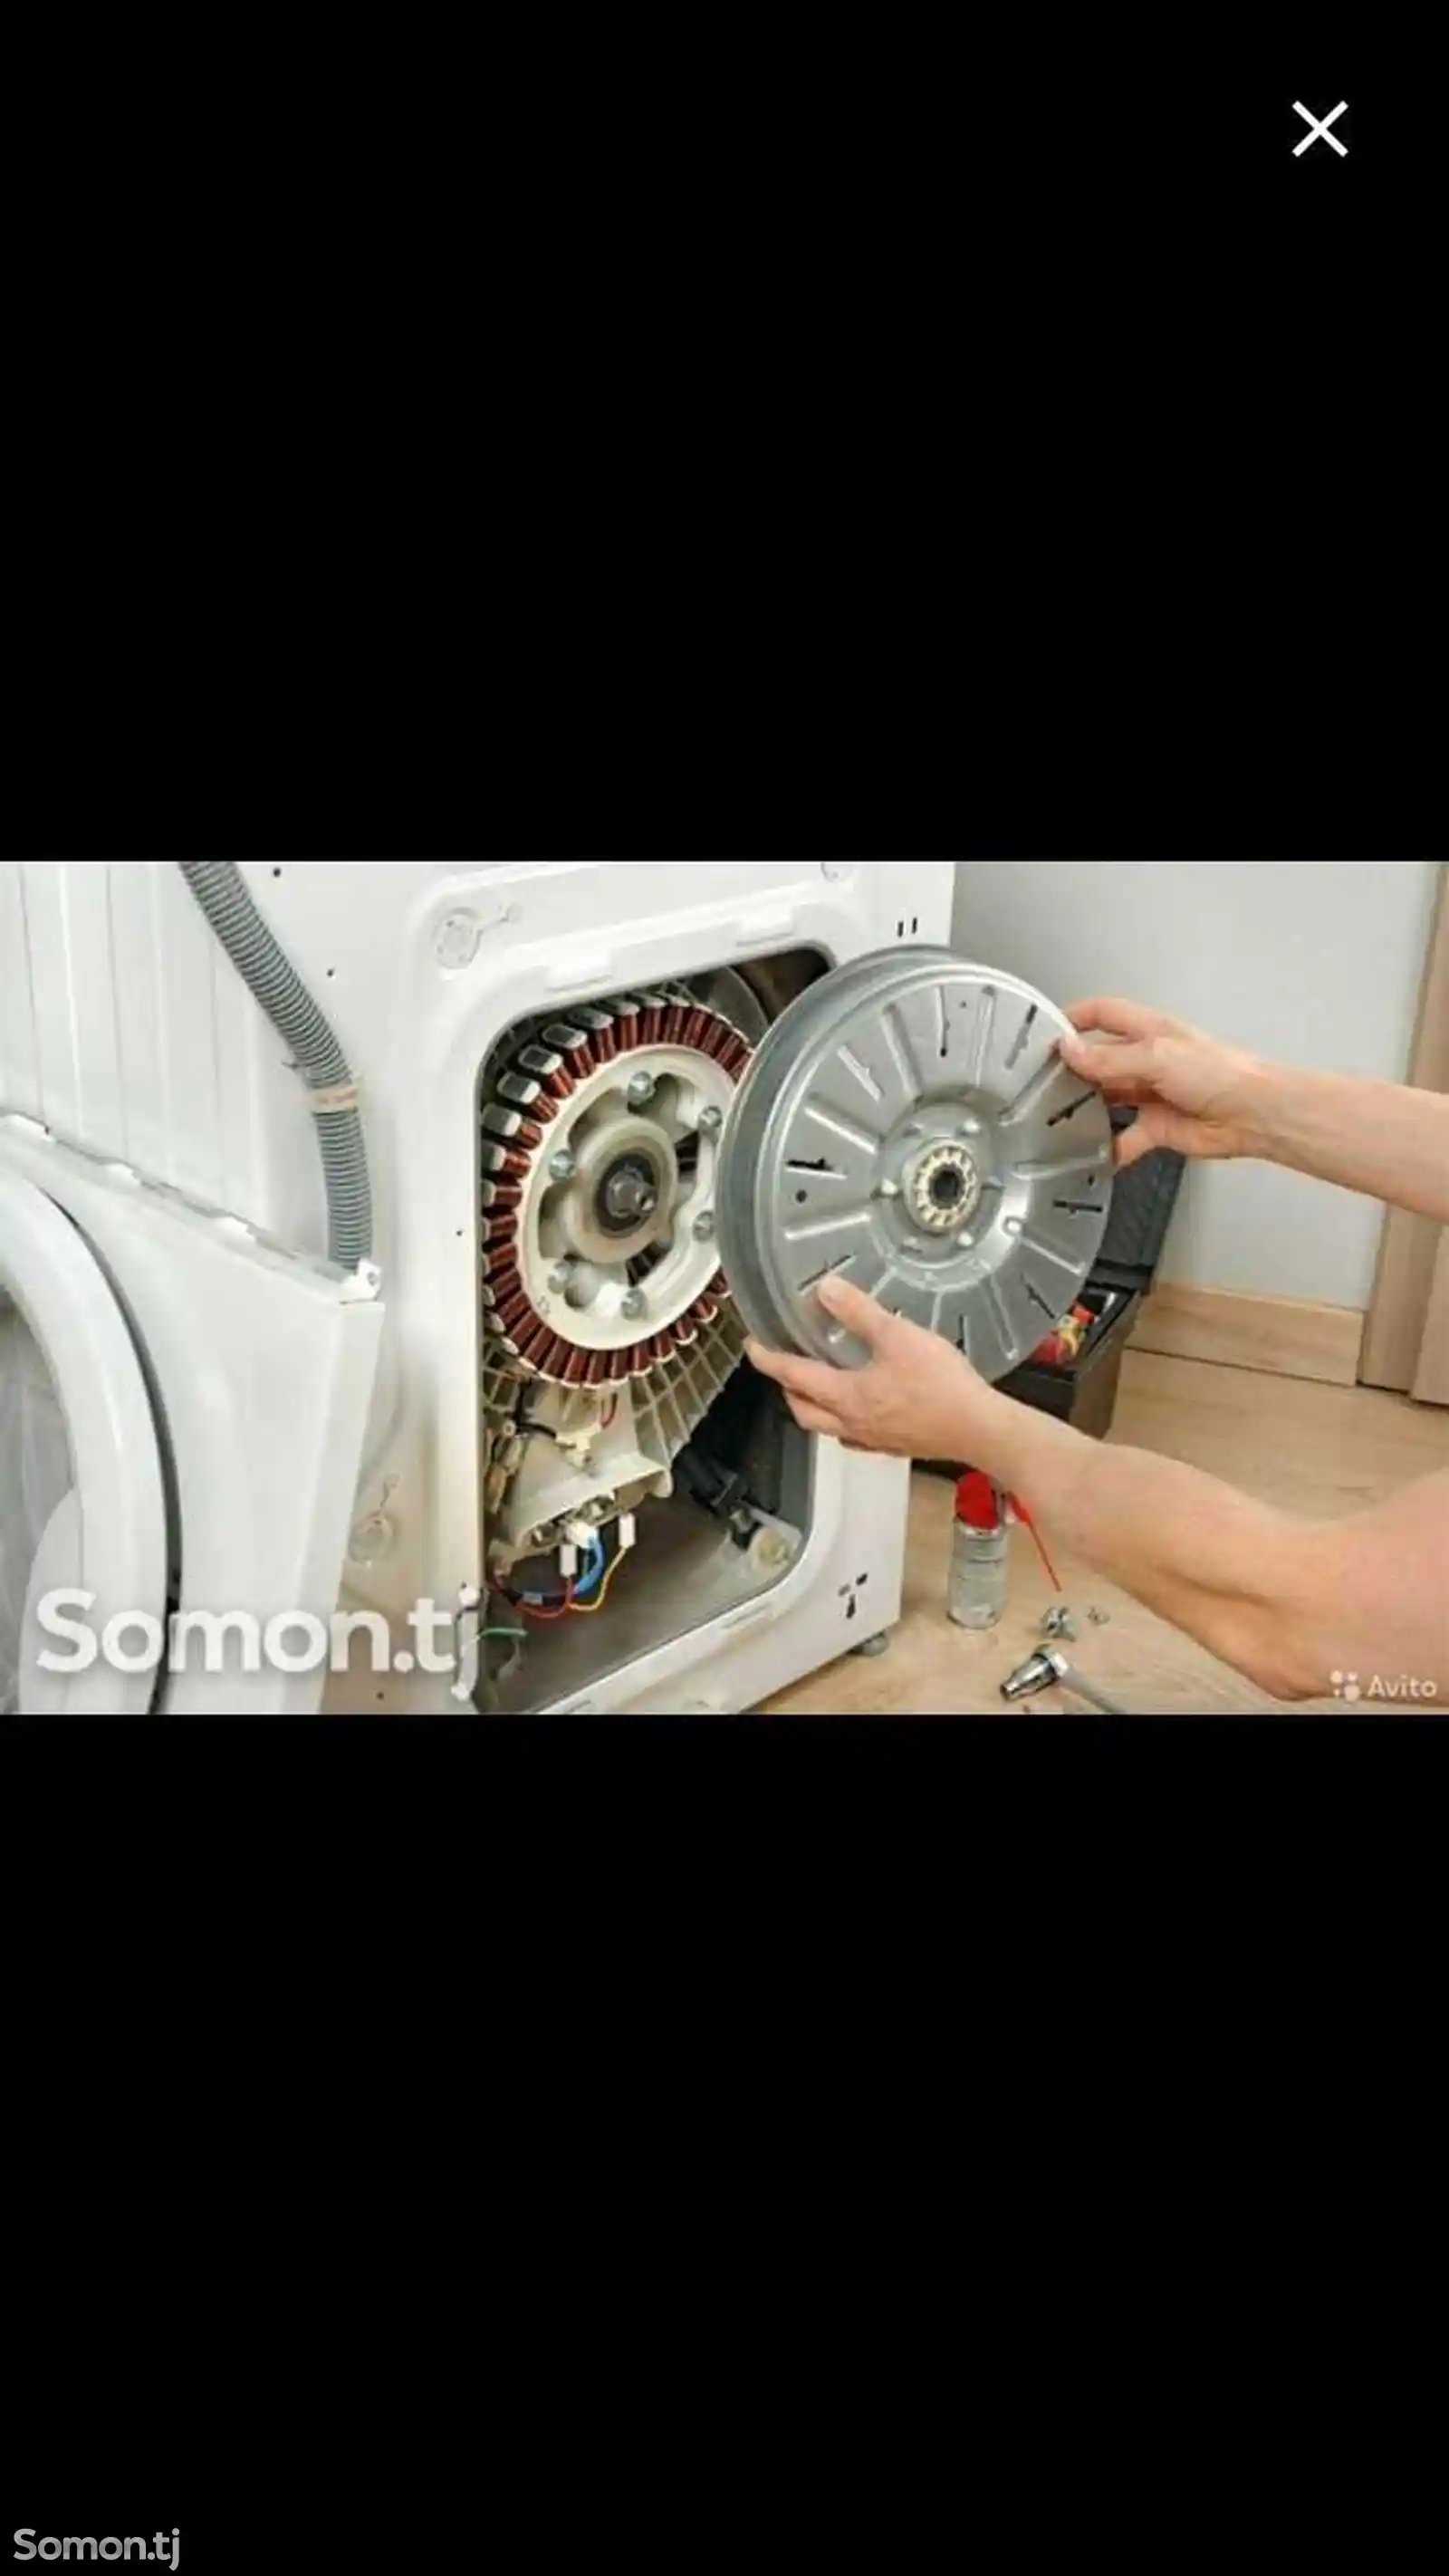 Установка стиральных машин-2